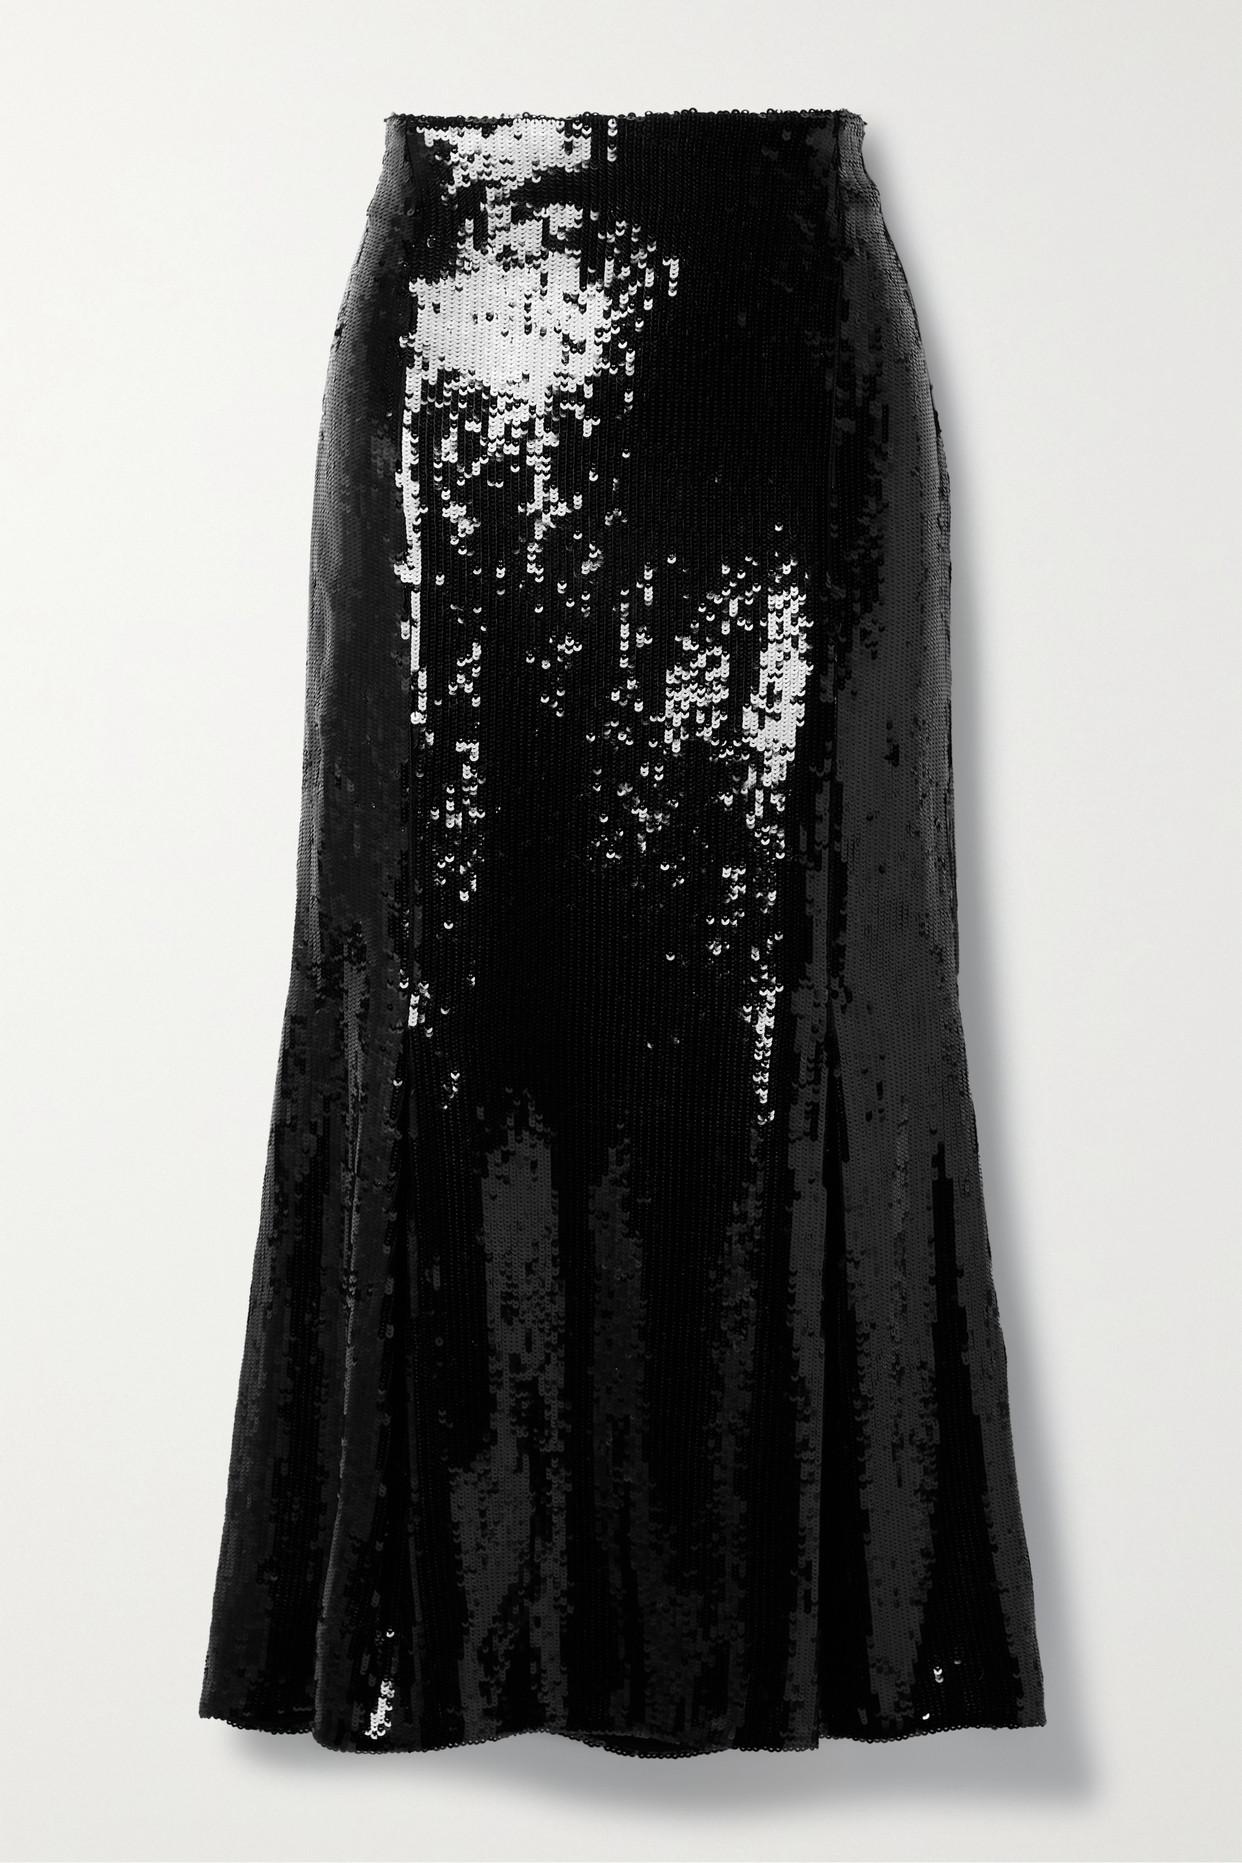 Khaite Levine Sequined Tulle Midi Skirt in Black | Lyst